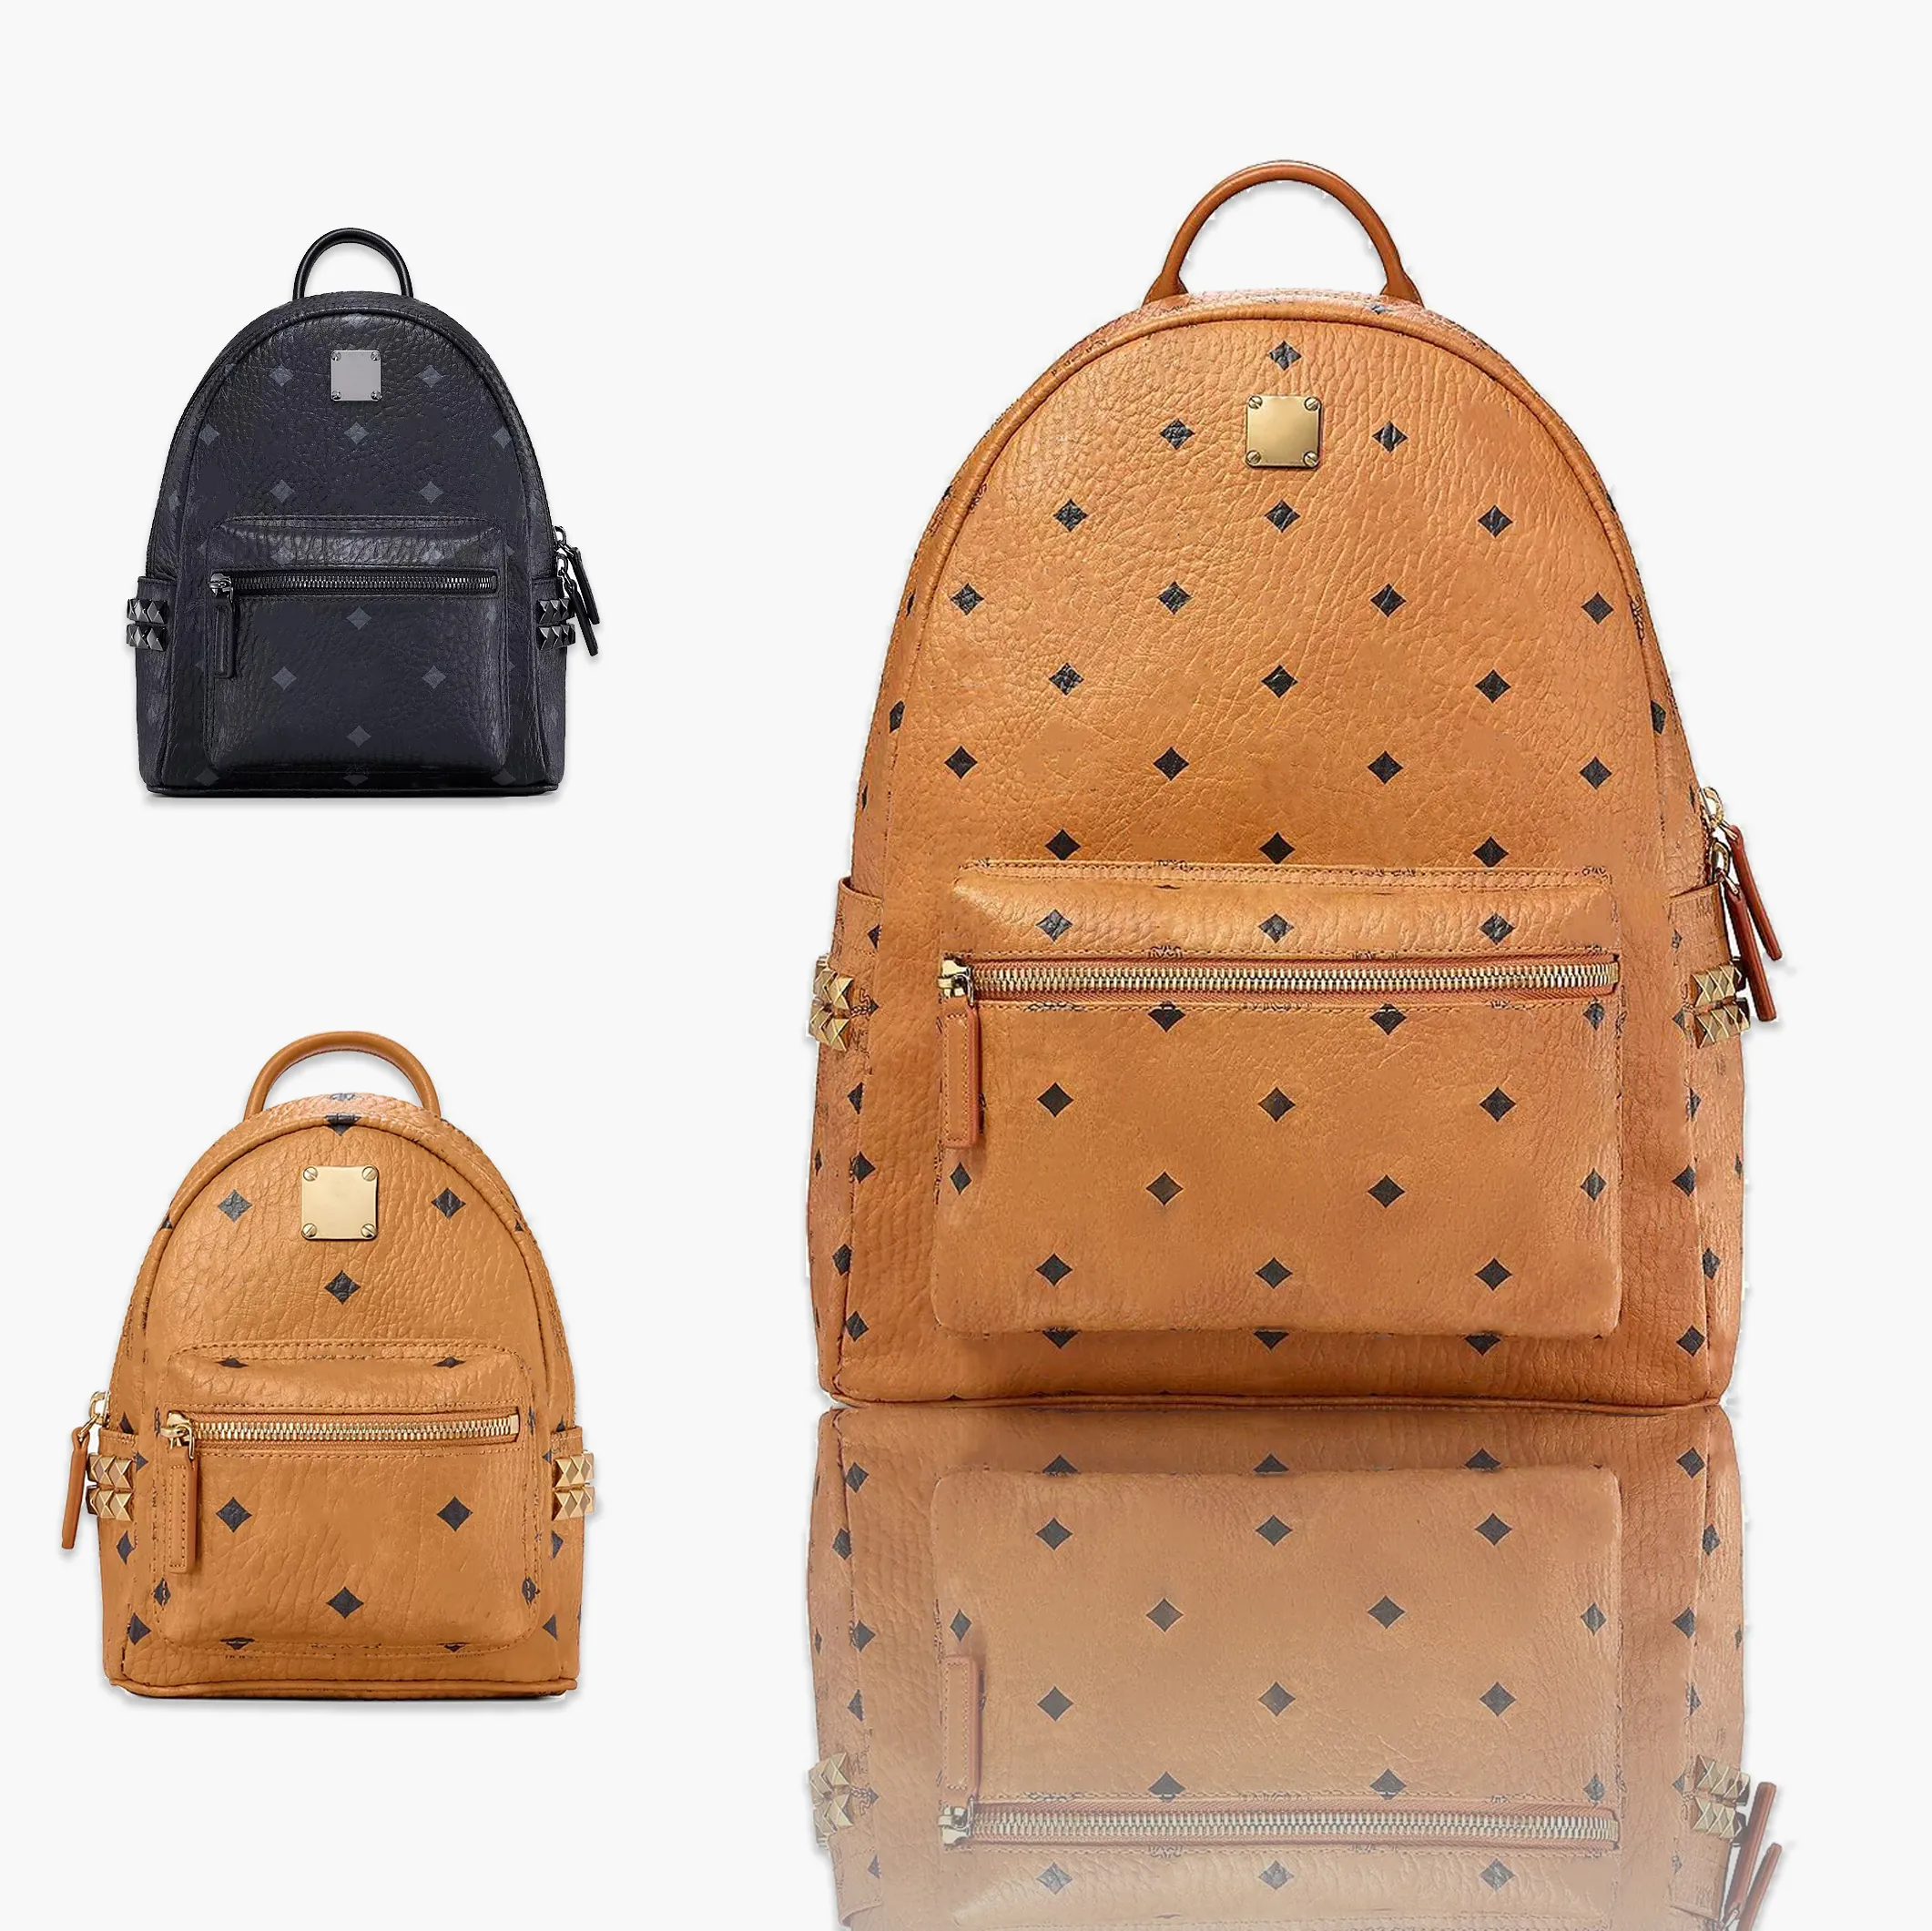 Kadın erkek MC lüks sırt çantası kitap çantası debriyaj crossbody küçük moda çift omuz çantaları Hakiki Deri gizli sakli konusmalar çanta sırt çantası tasarımcı çanta Okul çantaları